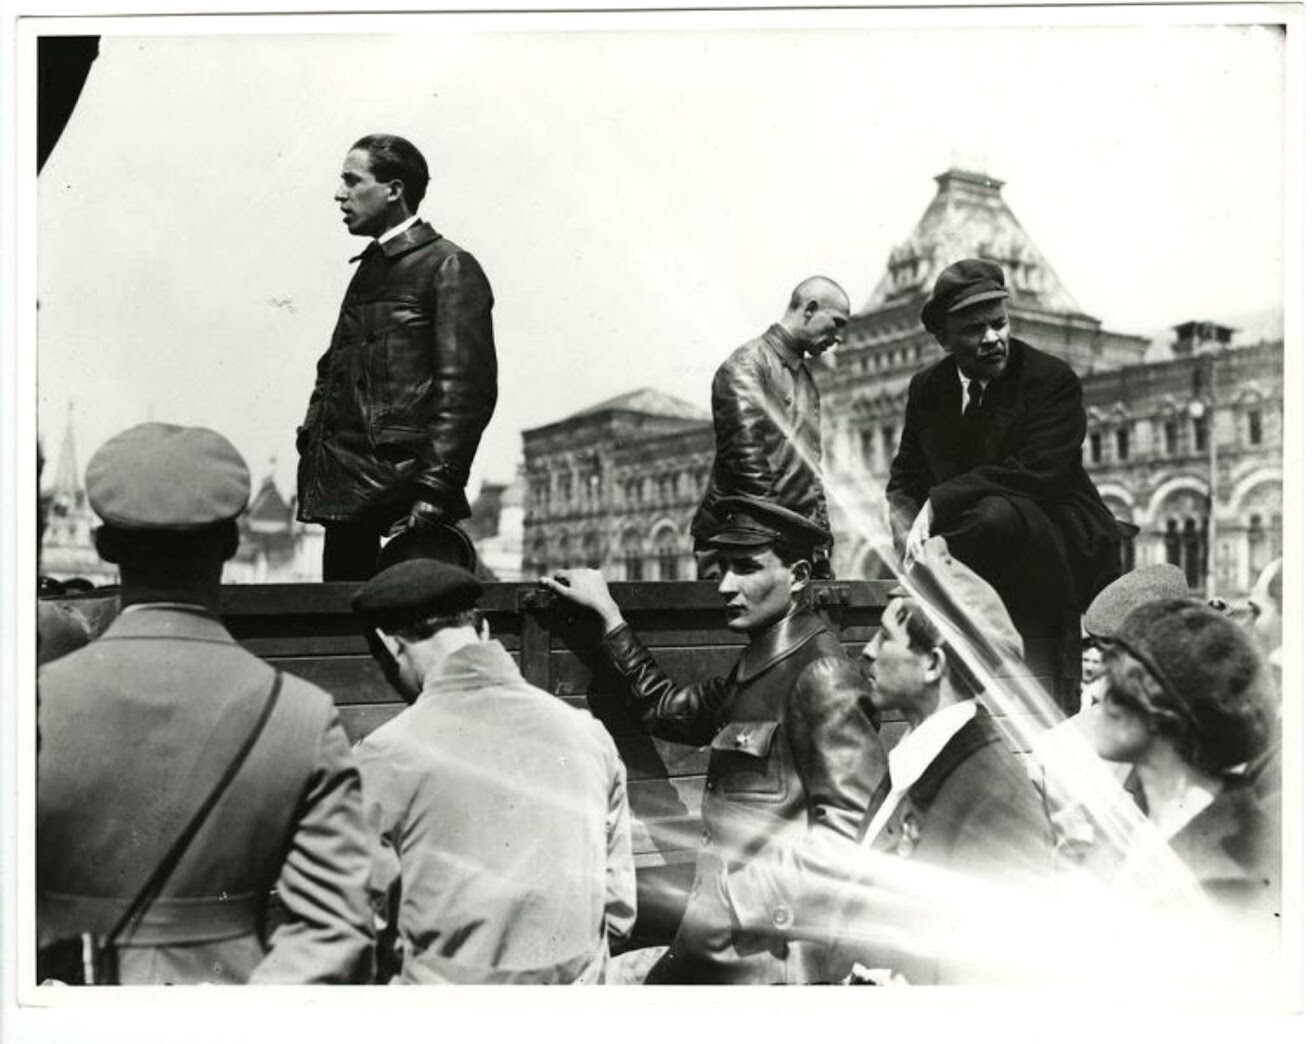 ウラジーミル・レーニンがトラックの上から国民に向けて演説する。1919年5月25日